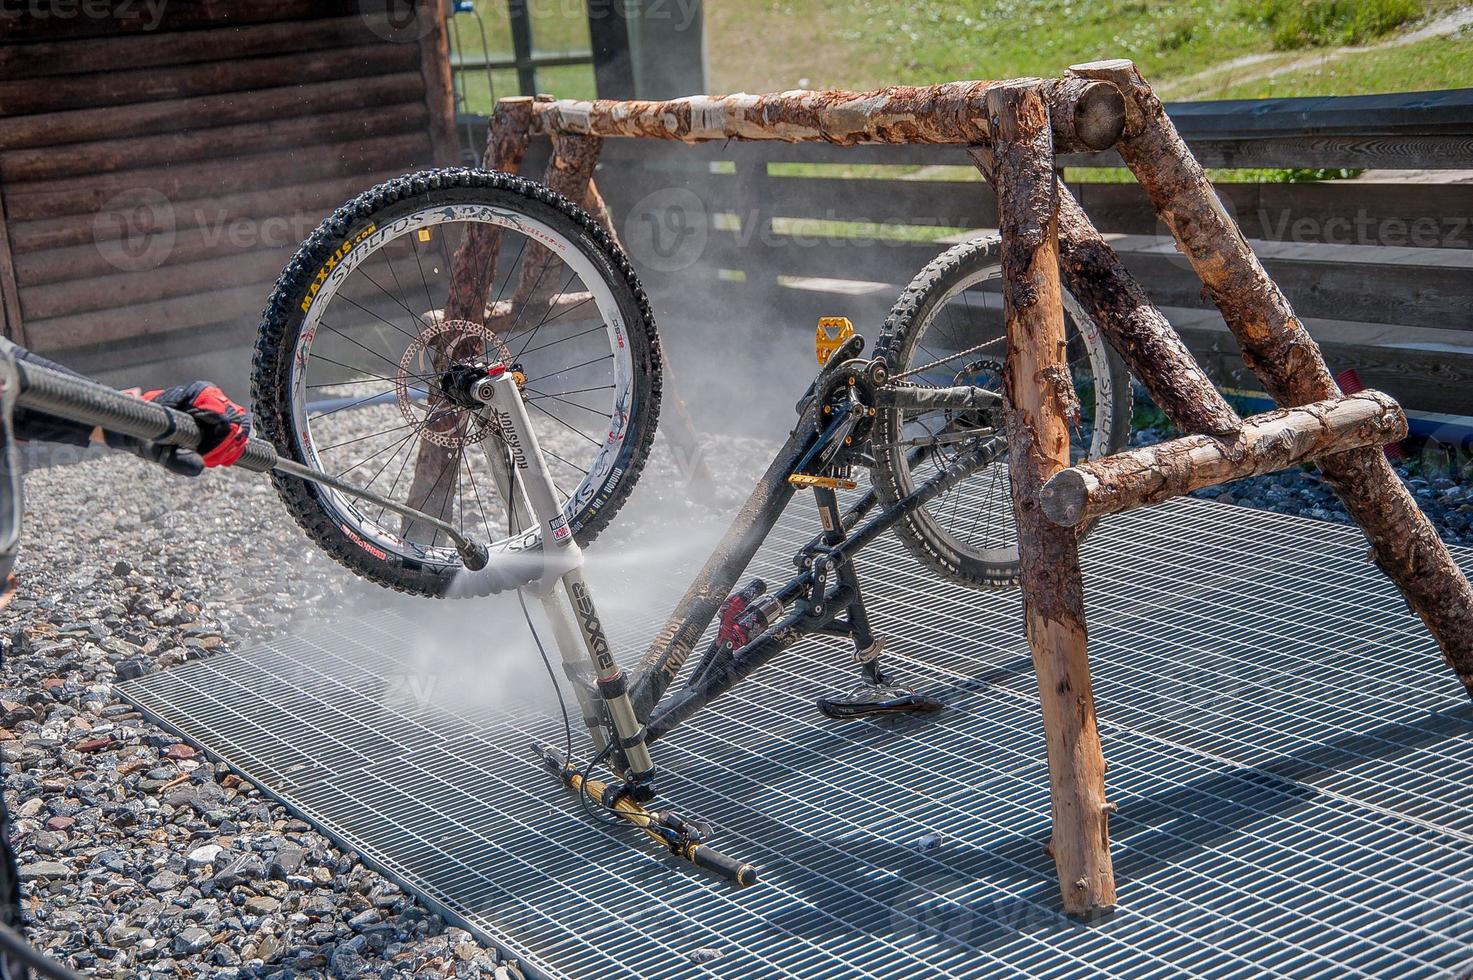 limpeza de bicicletas com pulivapor foto